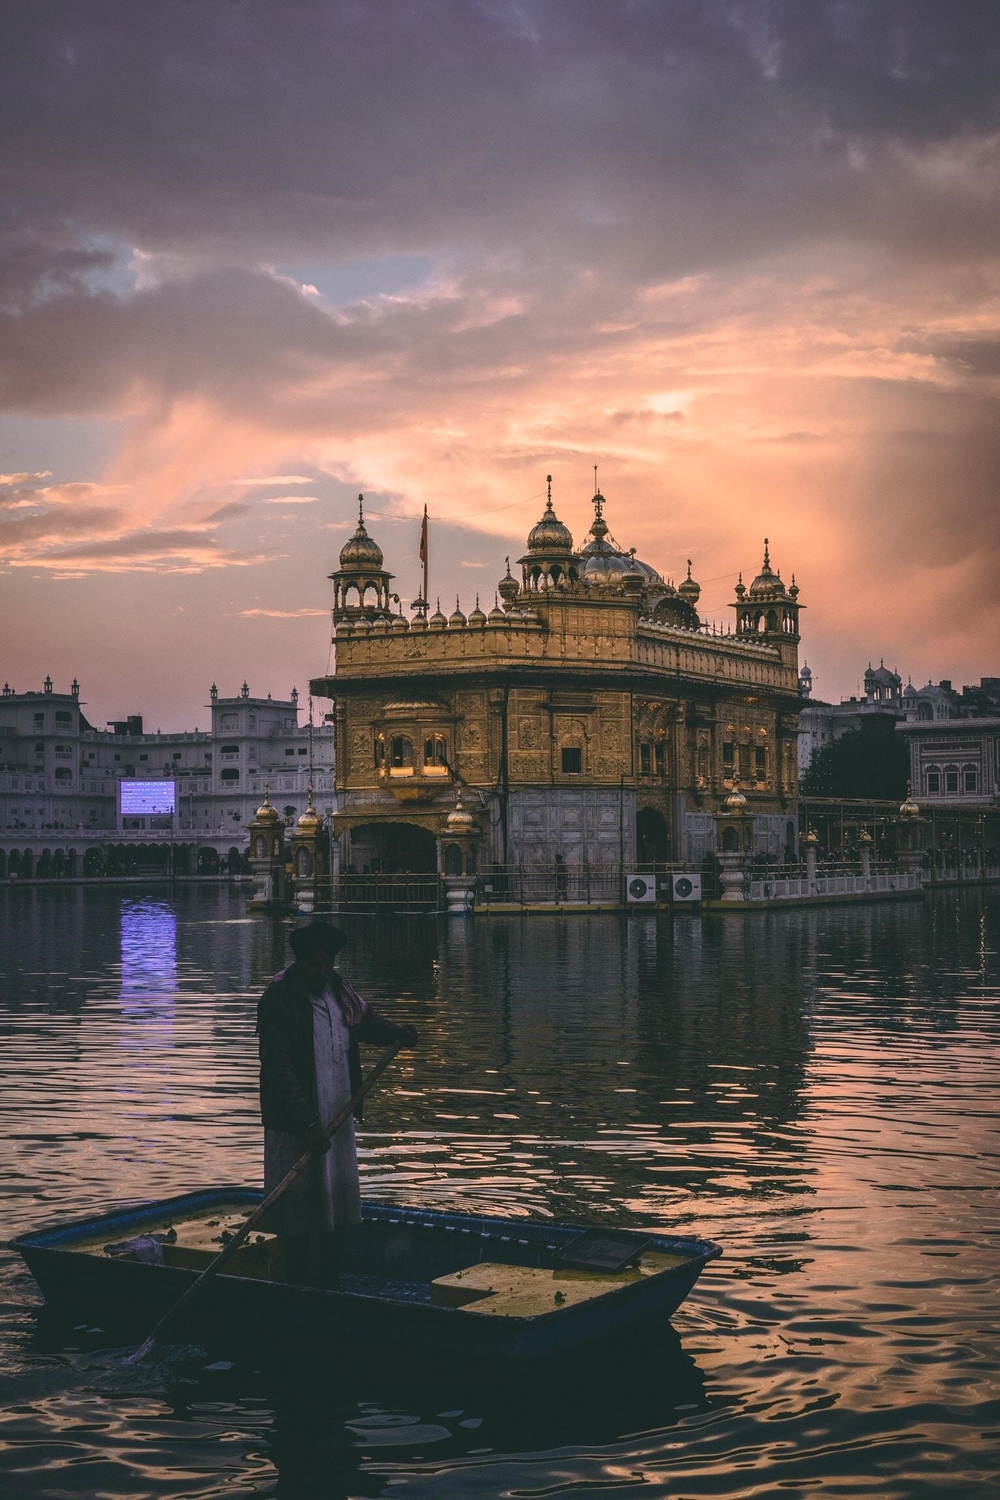   
Đền Vàng, địa điểm tôn giáo quan trọng nhất đối với người Sikh. Ảnh: @raghunayyar (Unsplash)